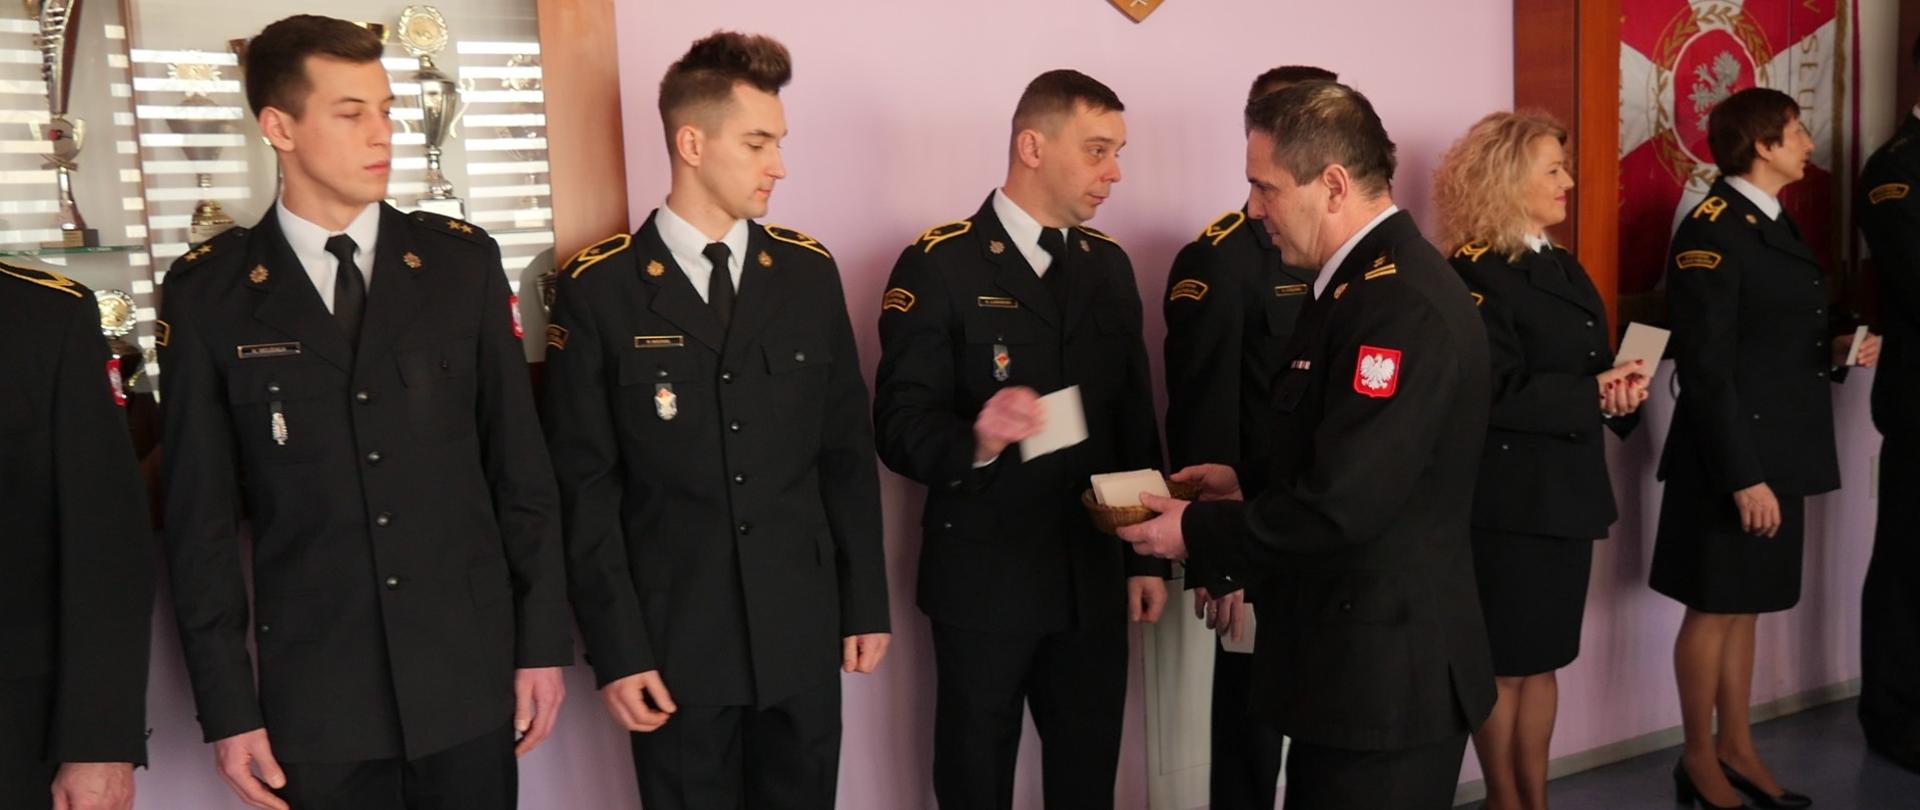 Strażacka Wigilia, zastępca komendanta rozdaje opłatki ustawionym w szeregu strażakom, wszyscy u mundurach wyjściowych